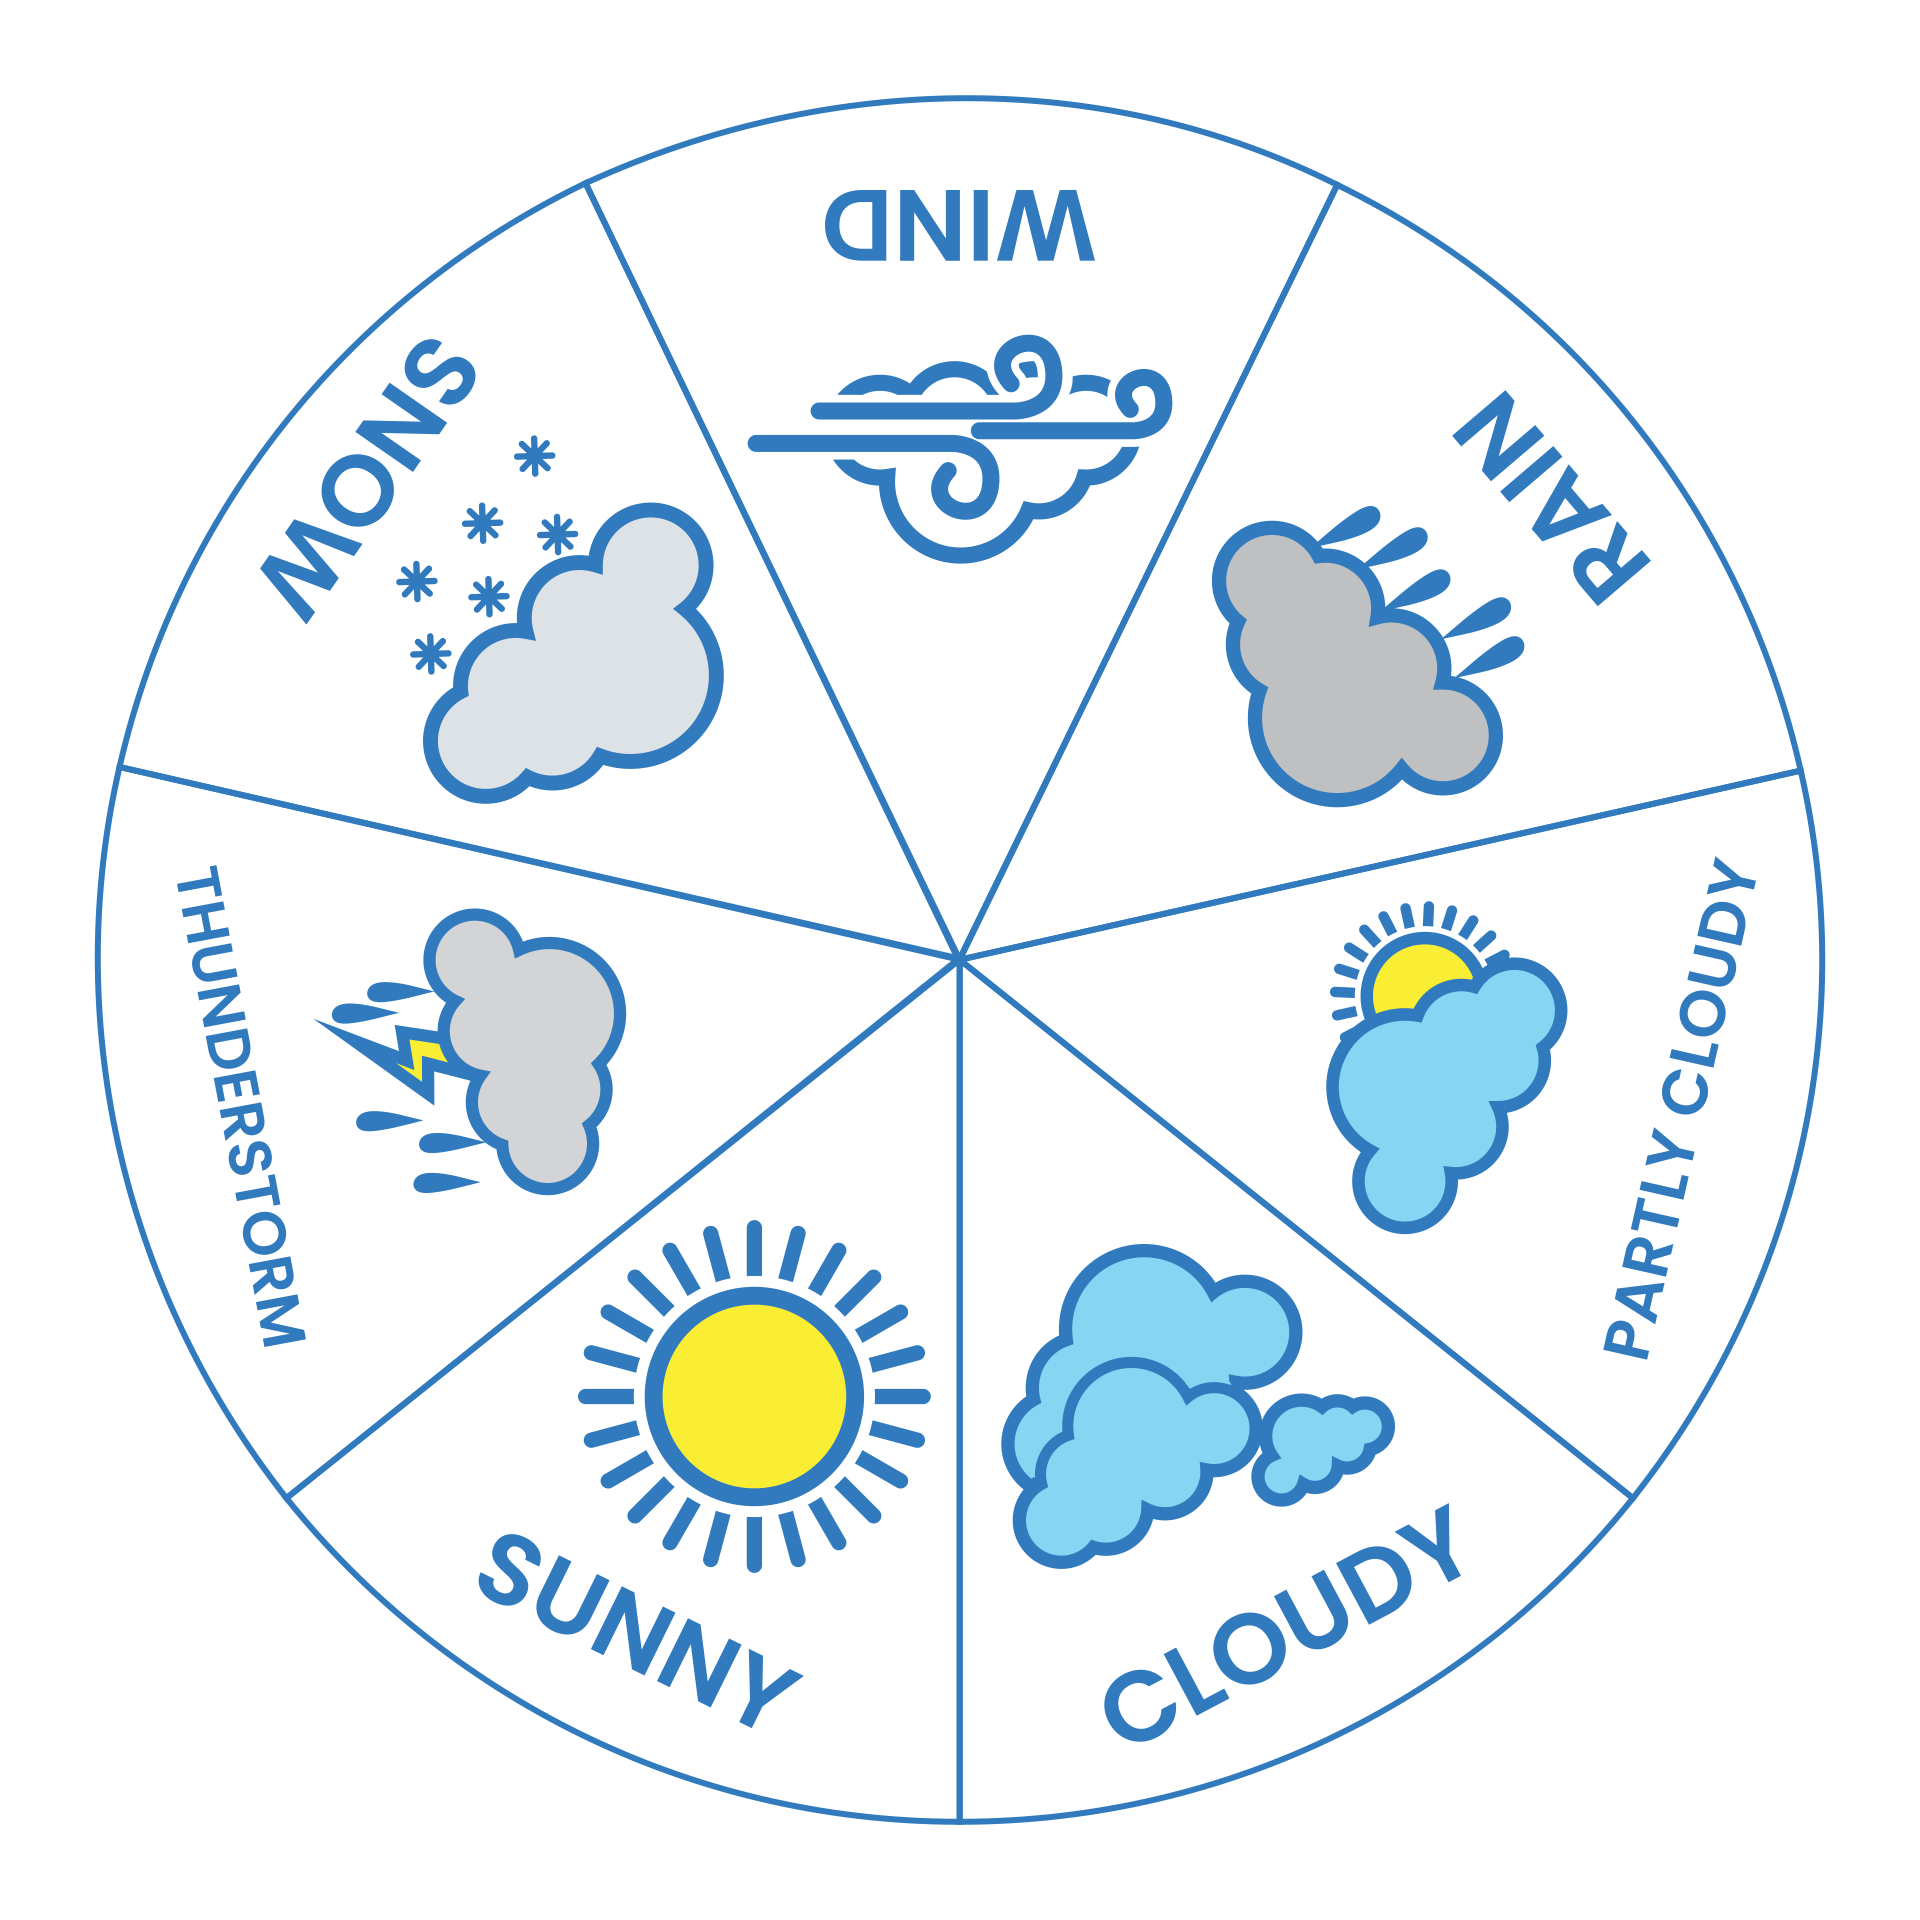 10 Best Free Printable Weather Wheel